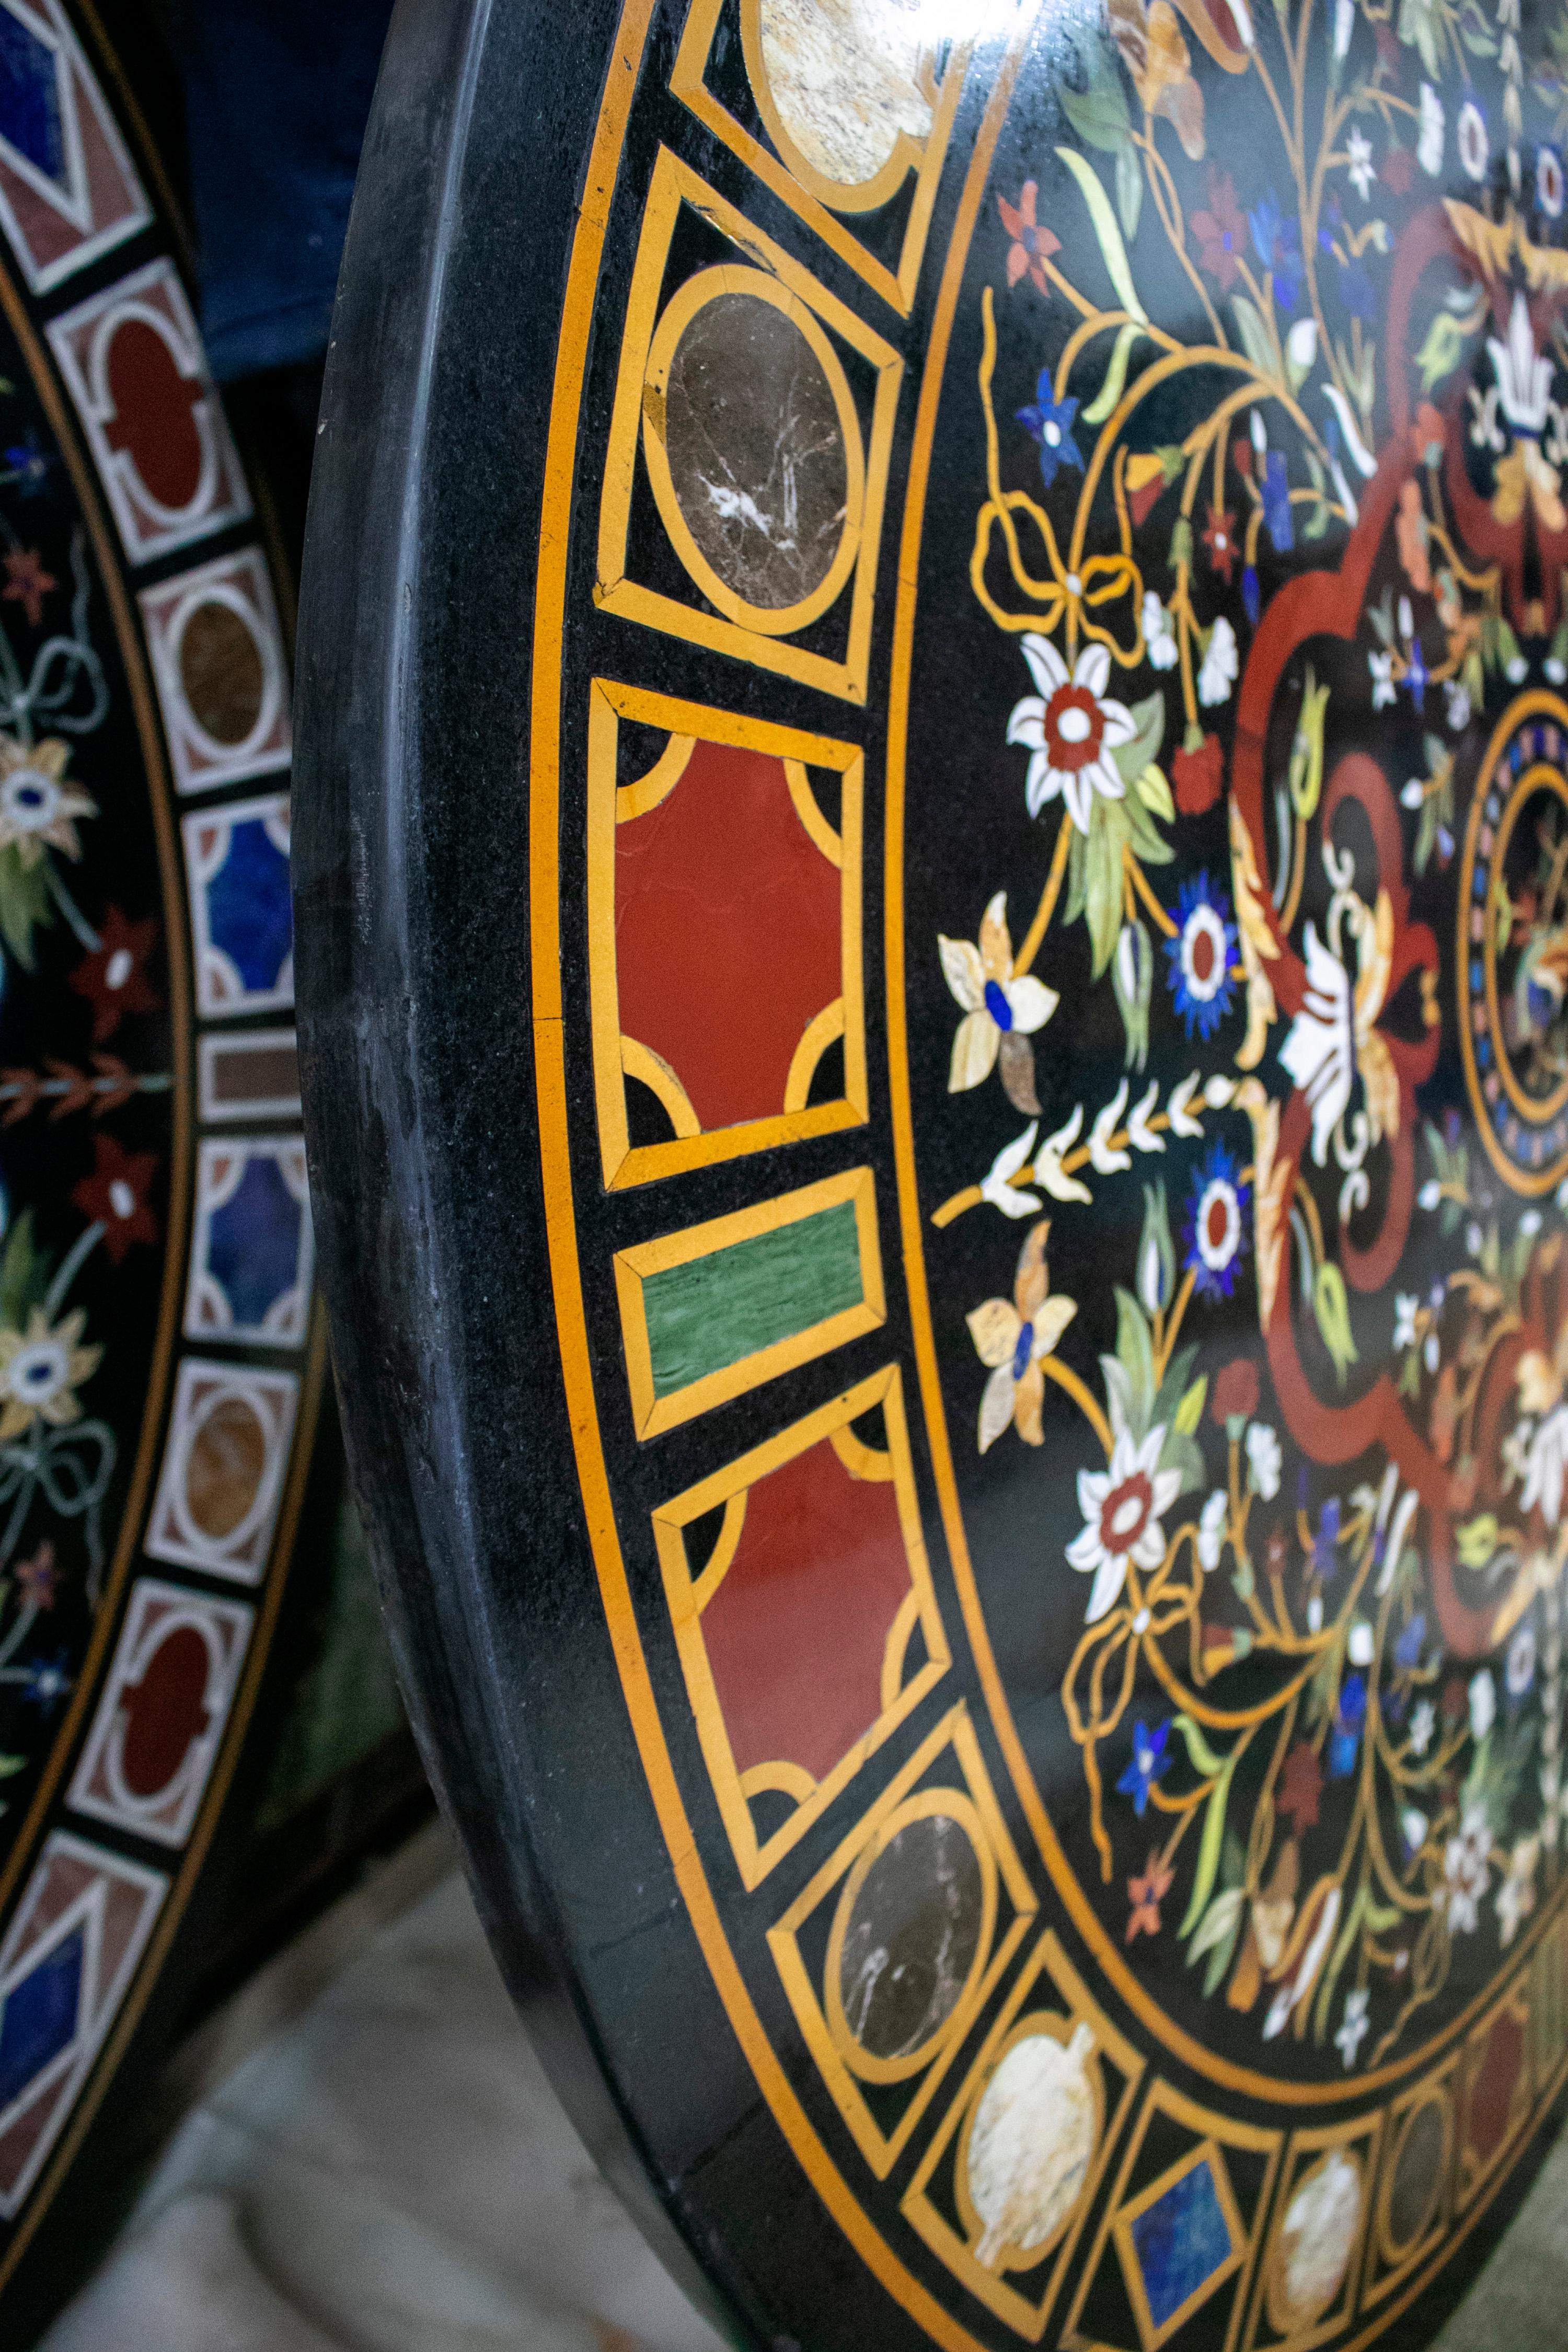 Plateau de table classique italien en pierre Pietra Dura de marbre noir décoré d'un oiseau entouré de fleurs et d'un cadre géométrique. Incrustation de mosaïque réalisée à la main à partir de lapis-lazuli bleu et d'un assortiment de pierres